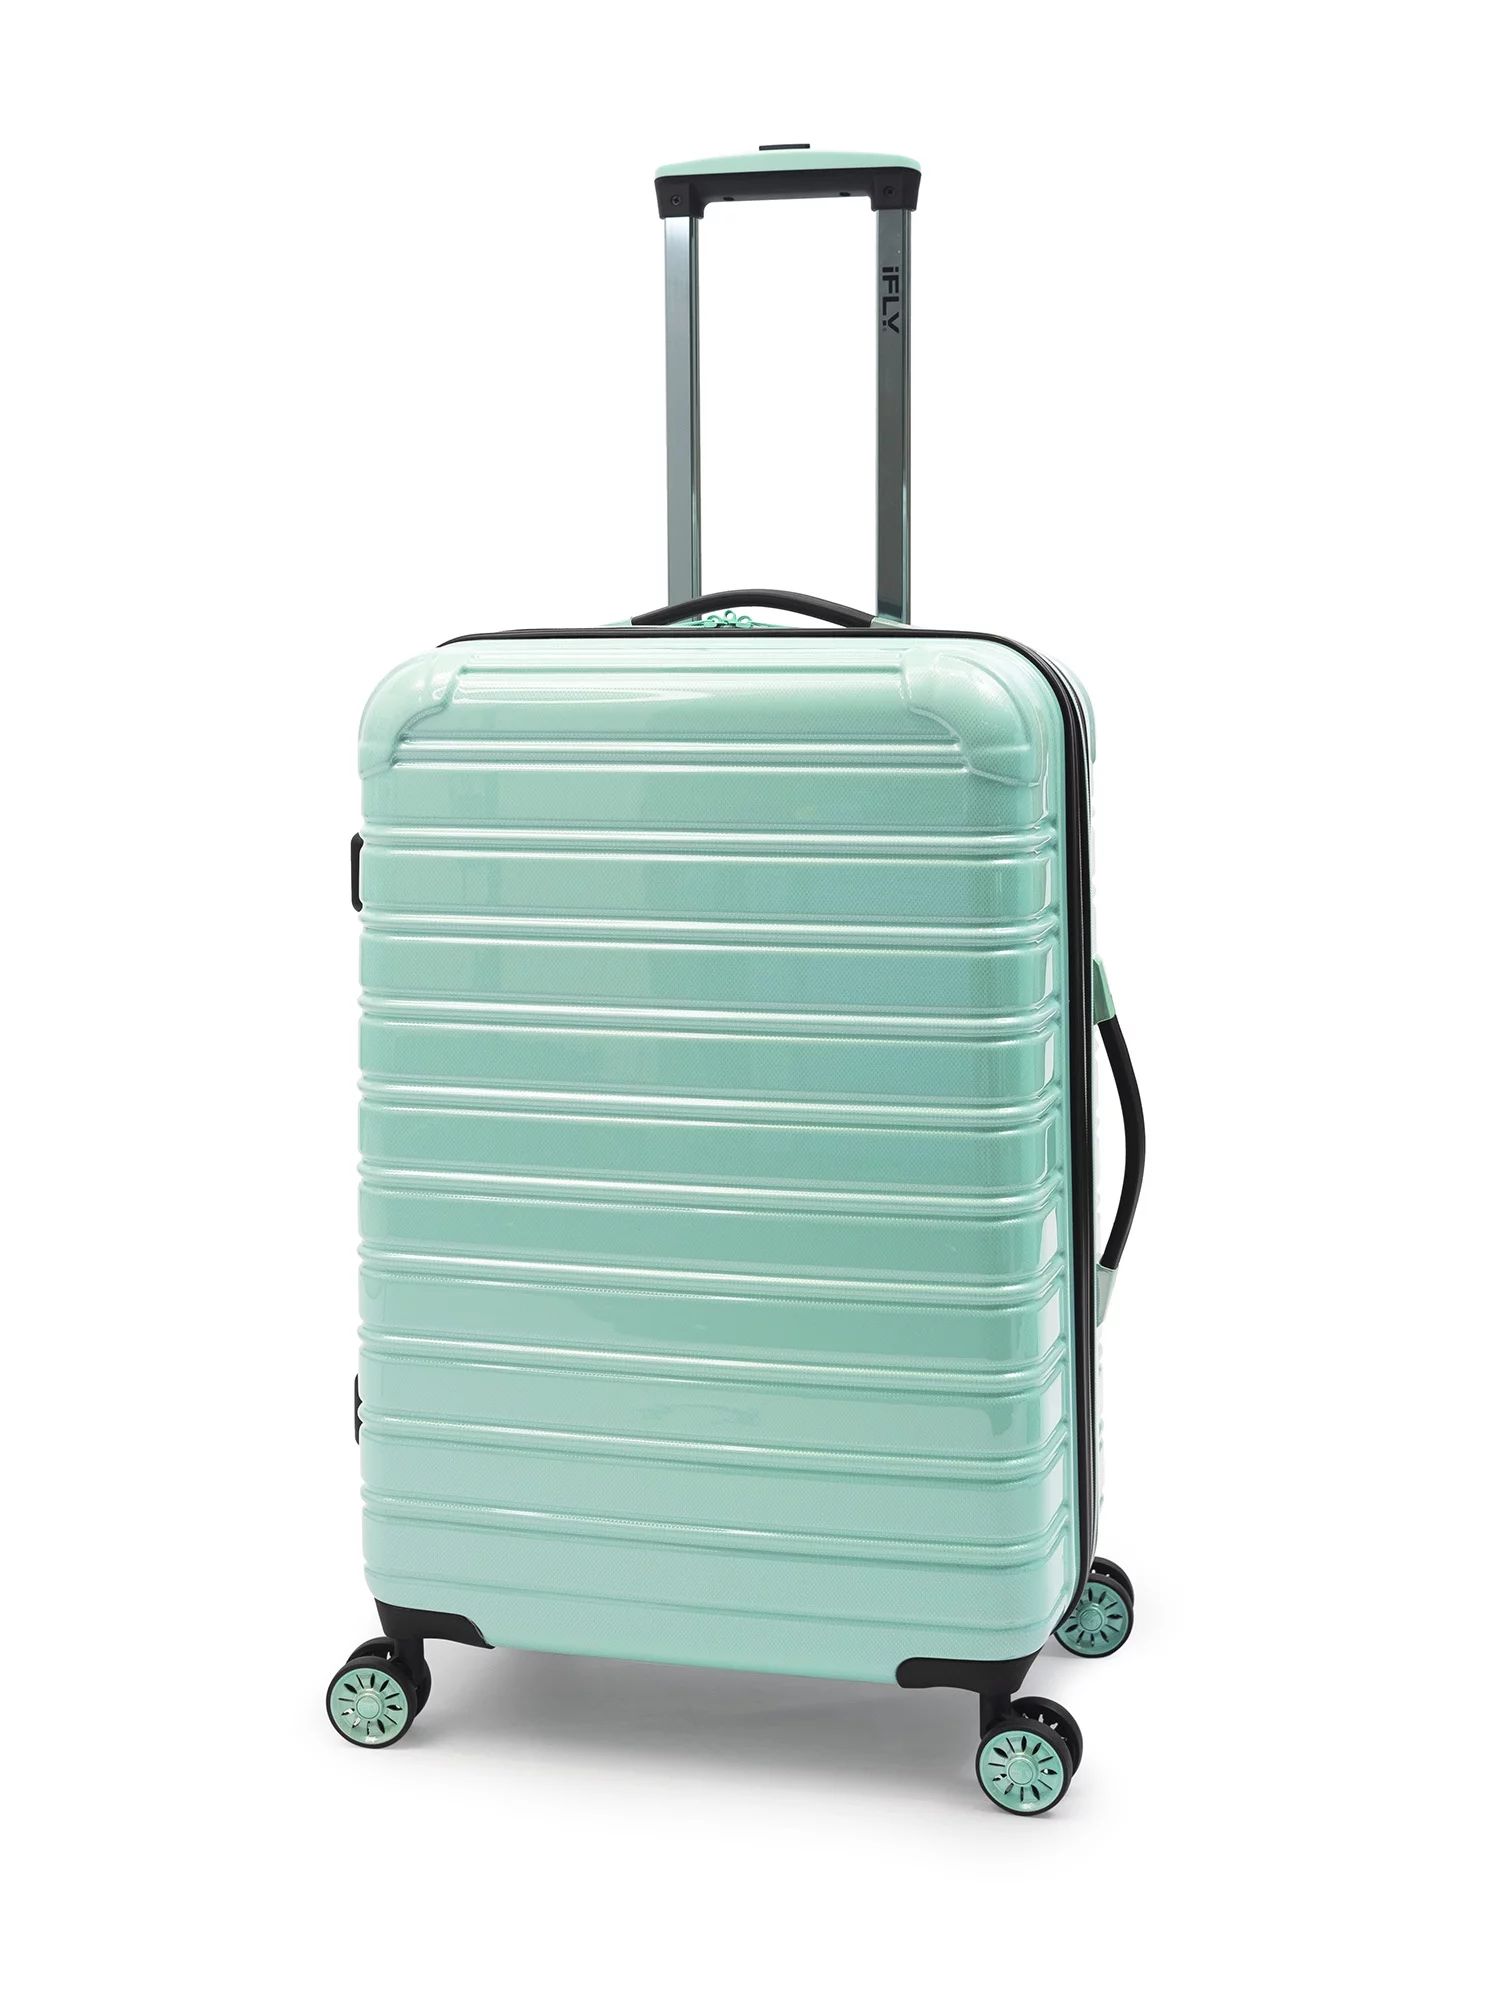 iFLY Hardside Fibertech Carry On Luggage, 20" | Walmart (US)